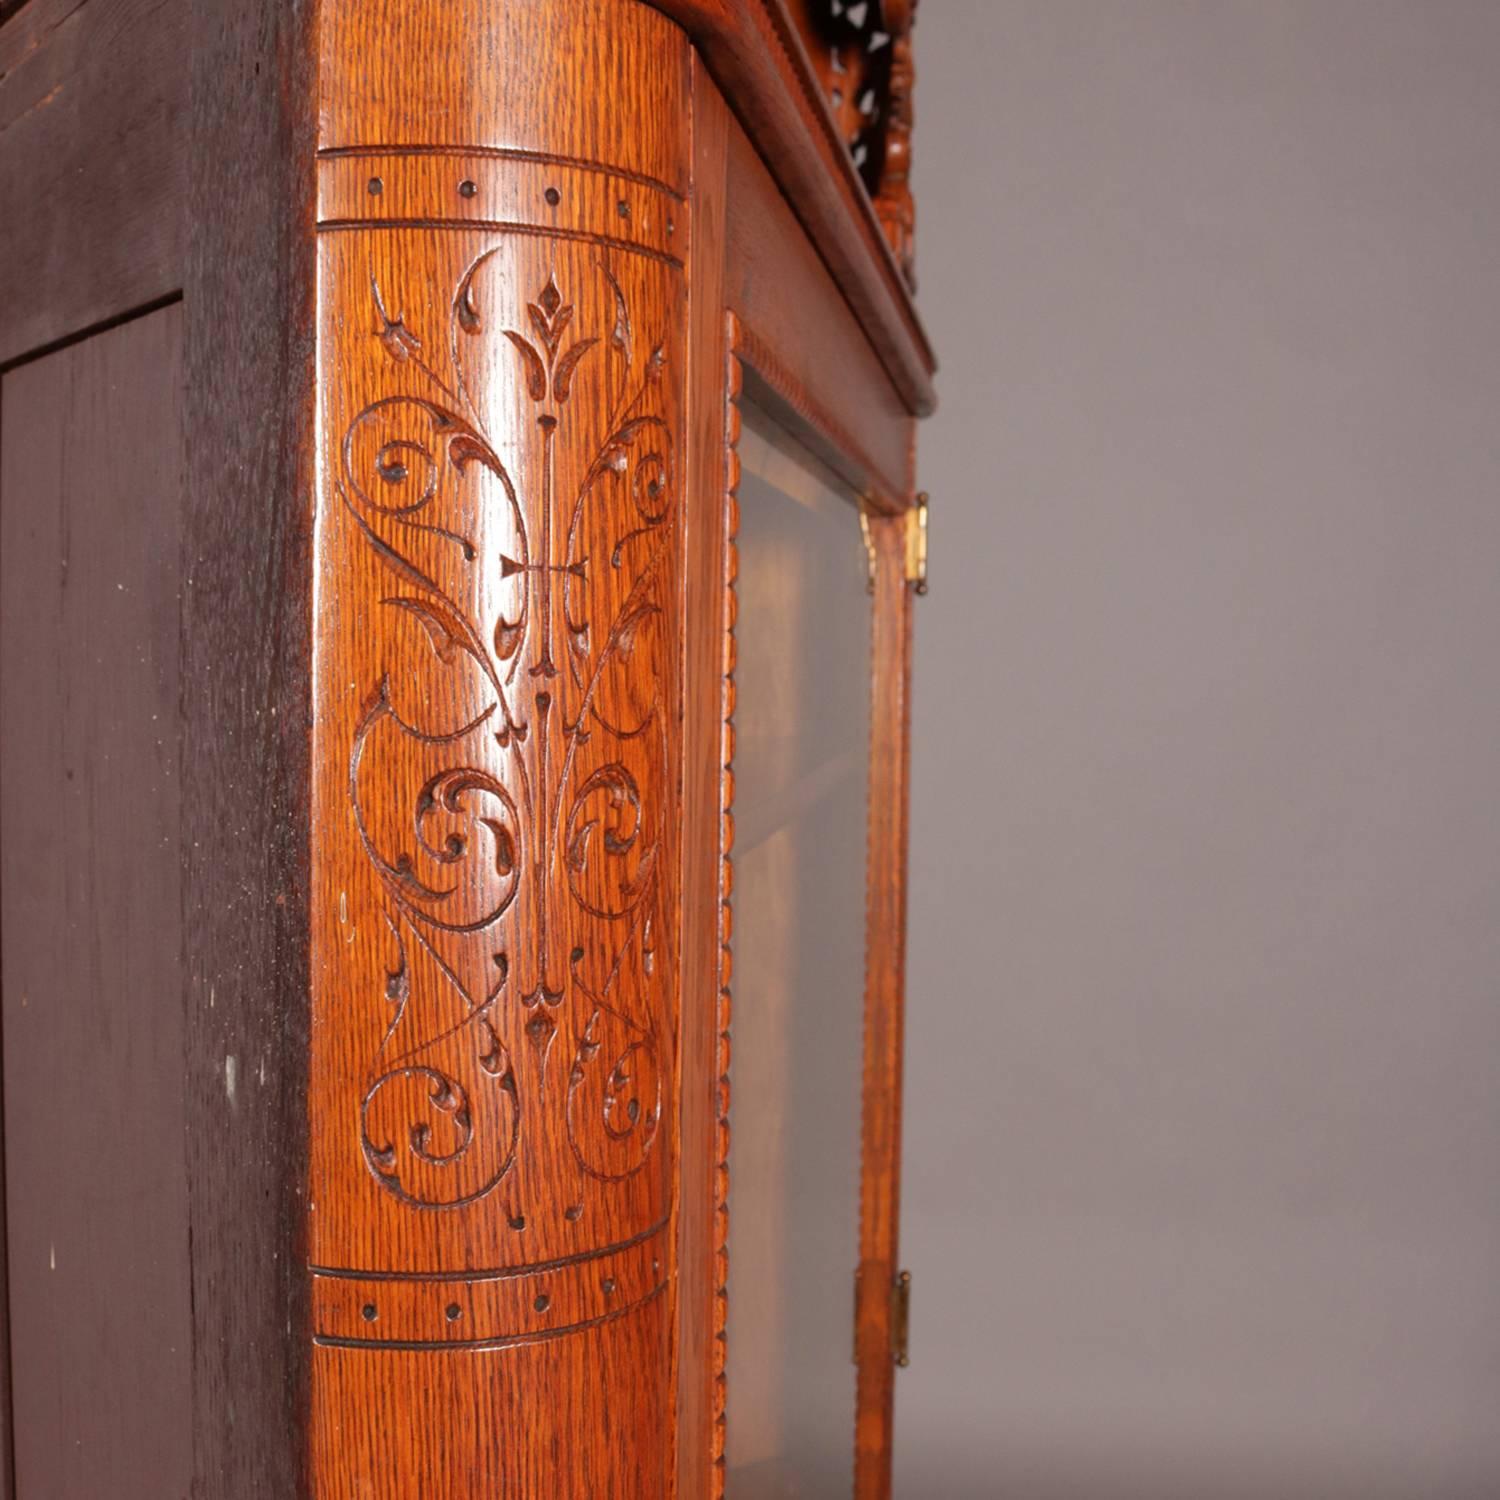 antique corner china cabinet